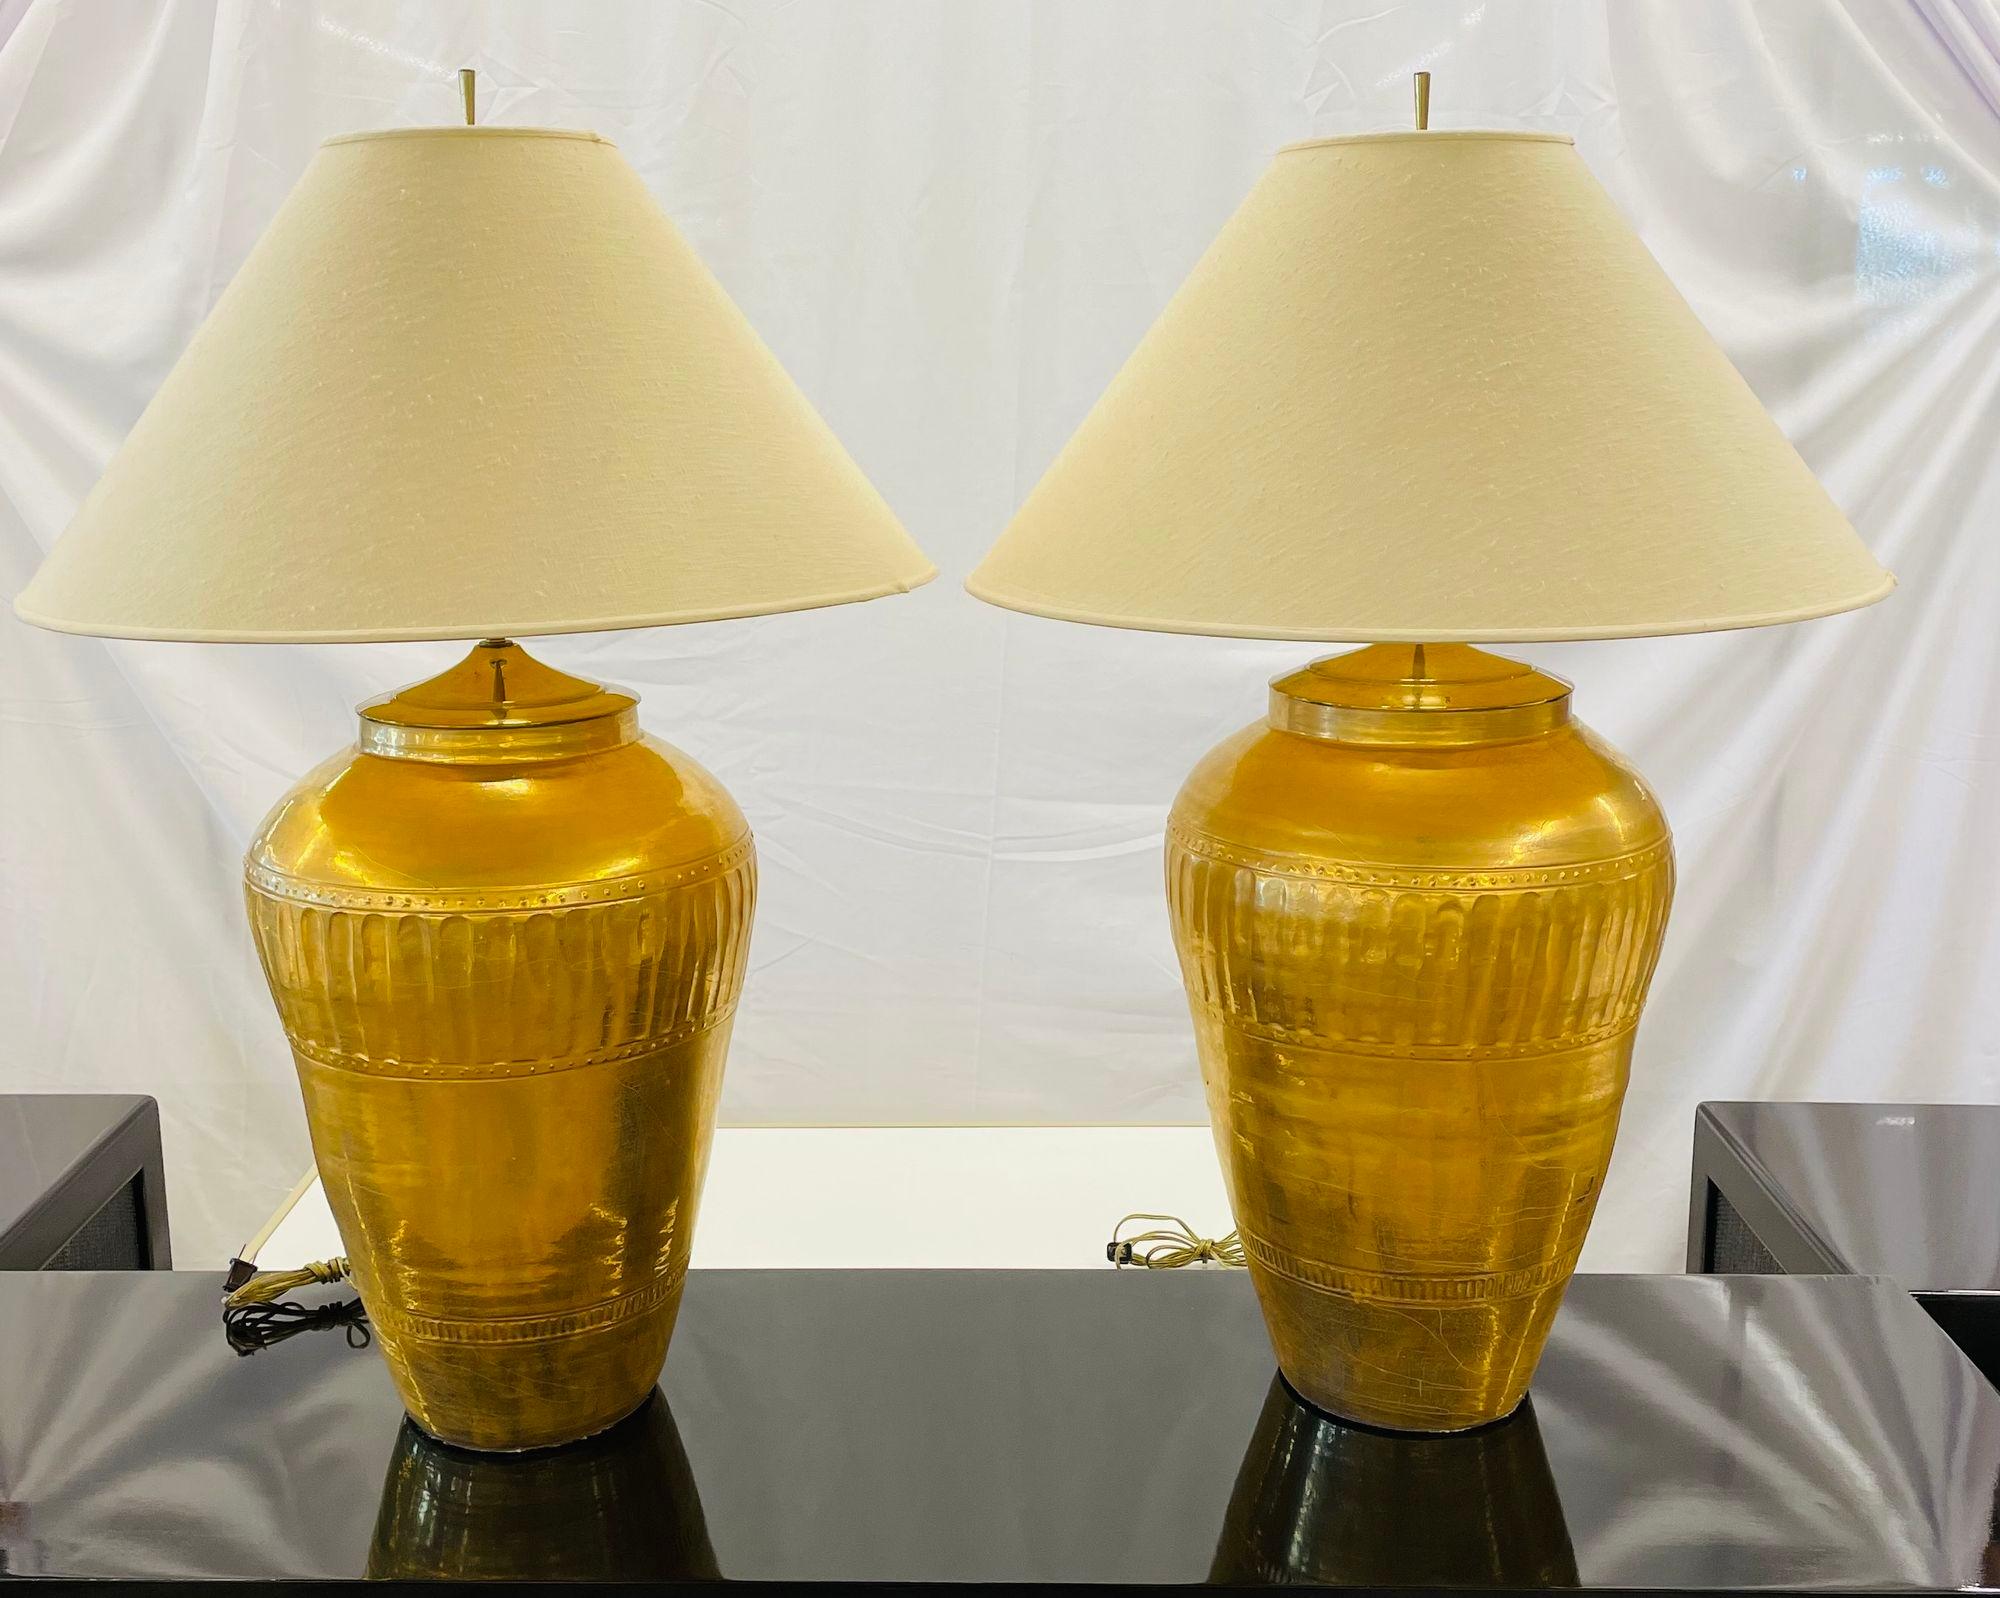 Paire de lampes de bureau en forme d'urne en métal doré, style Hollywood Regency
 
Paire de lampes de table monumentales de forme Ginger Jar en métal craquelé doré à l'eau, chacune dotée de deux lampes nouvellement câblées. La paire avec des